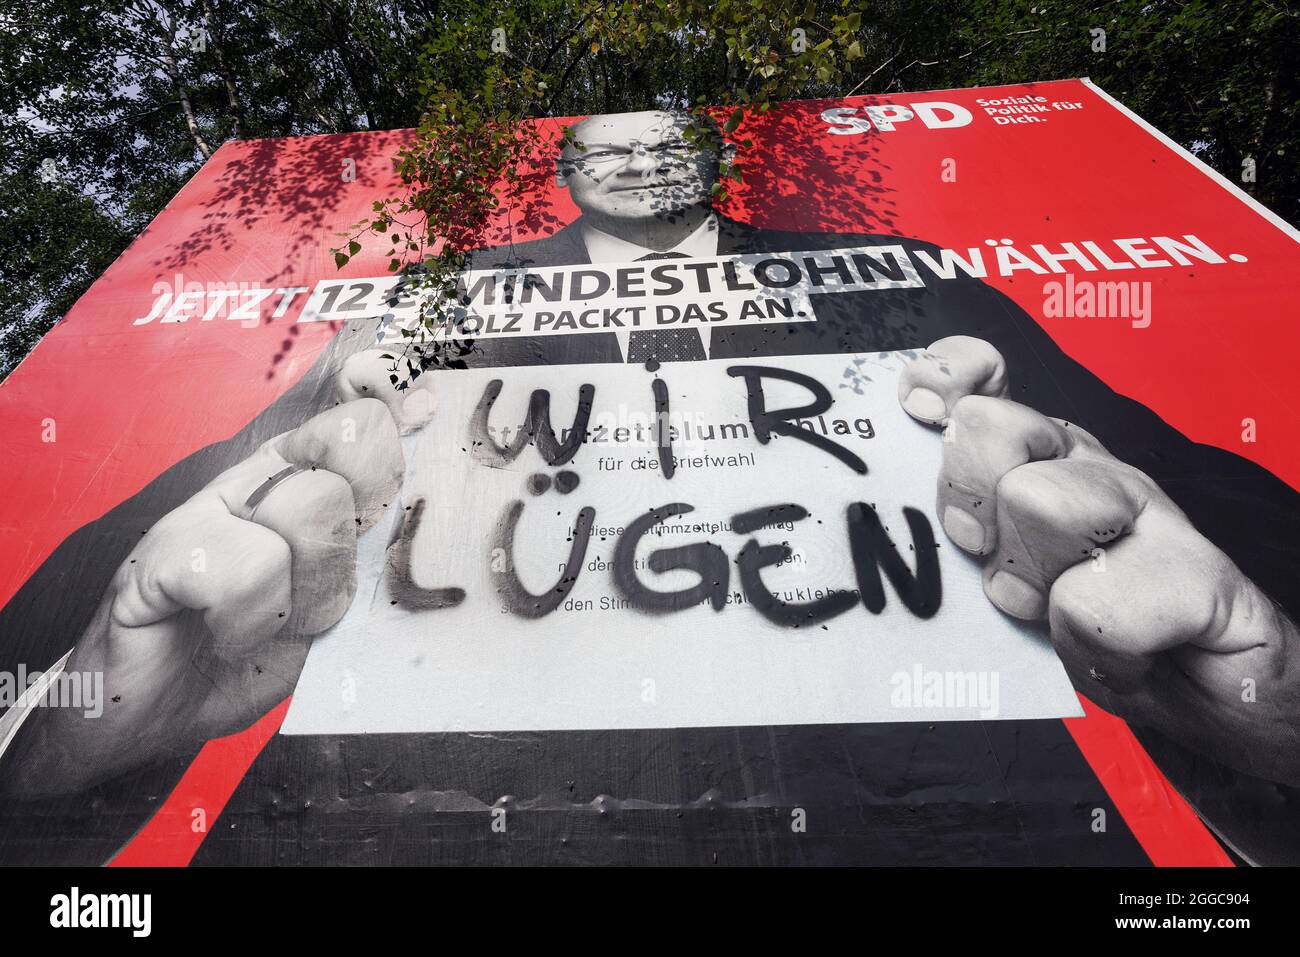 Bundestagswahl 2021, SPD-Kanzlerkandidat OLAF Scholz auf einem beschmierten Wahlplakat der SPD. Dortmund, 30.08.2021 Foto Stock